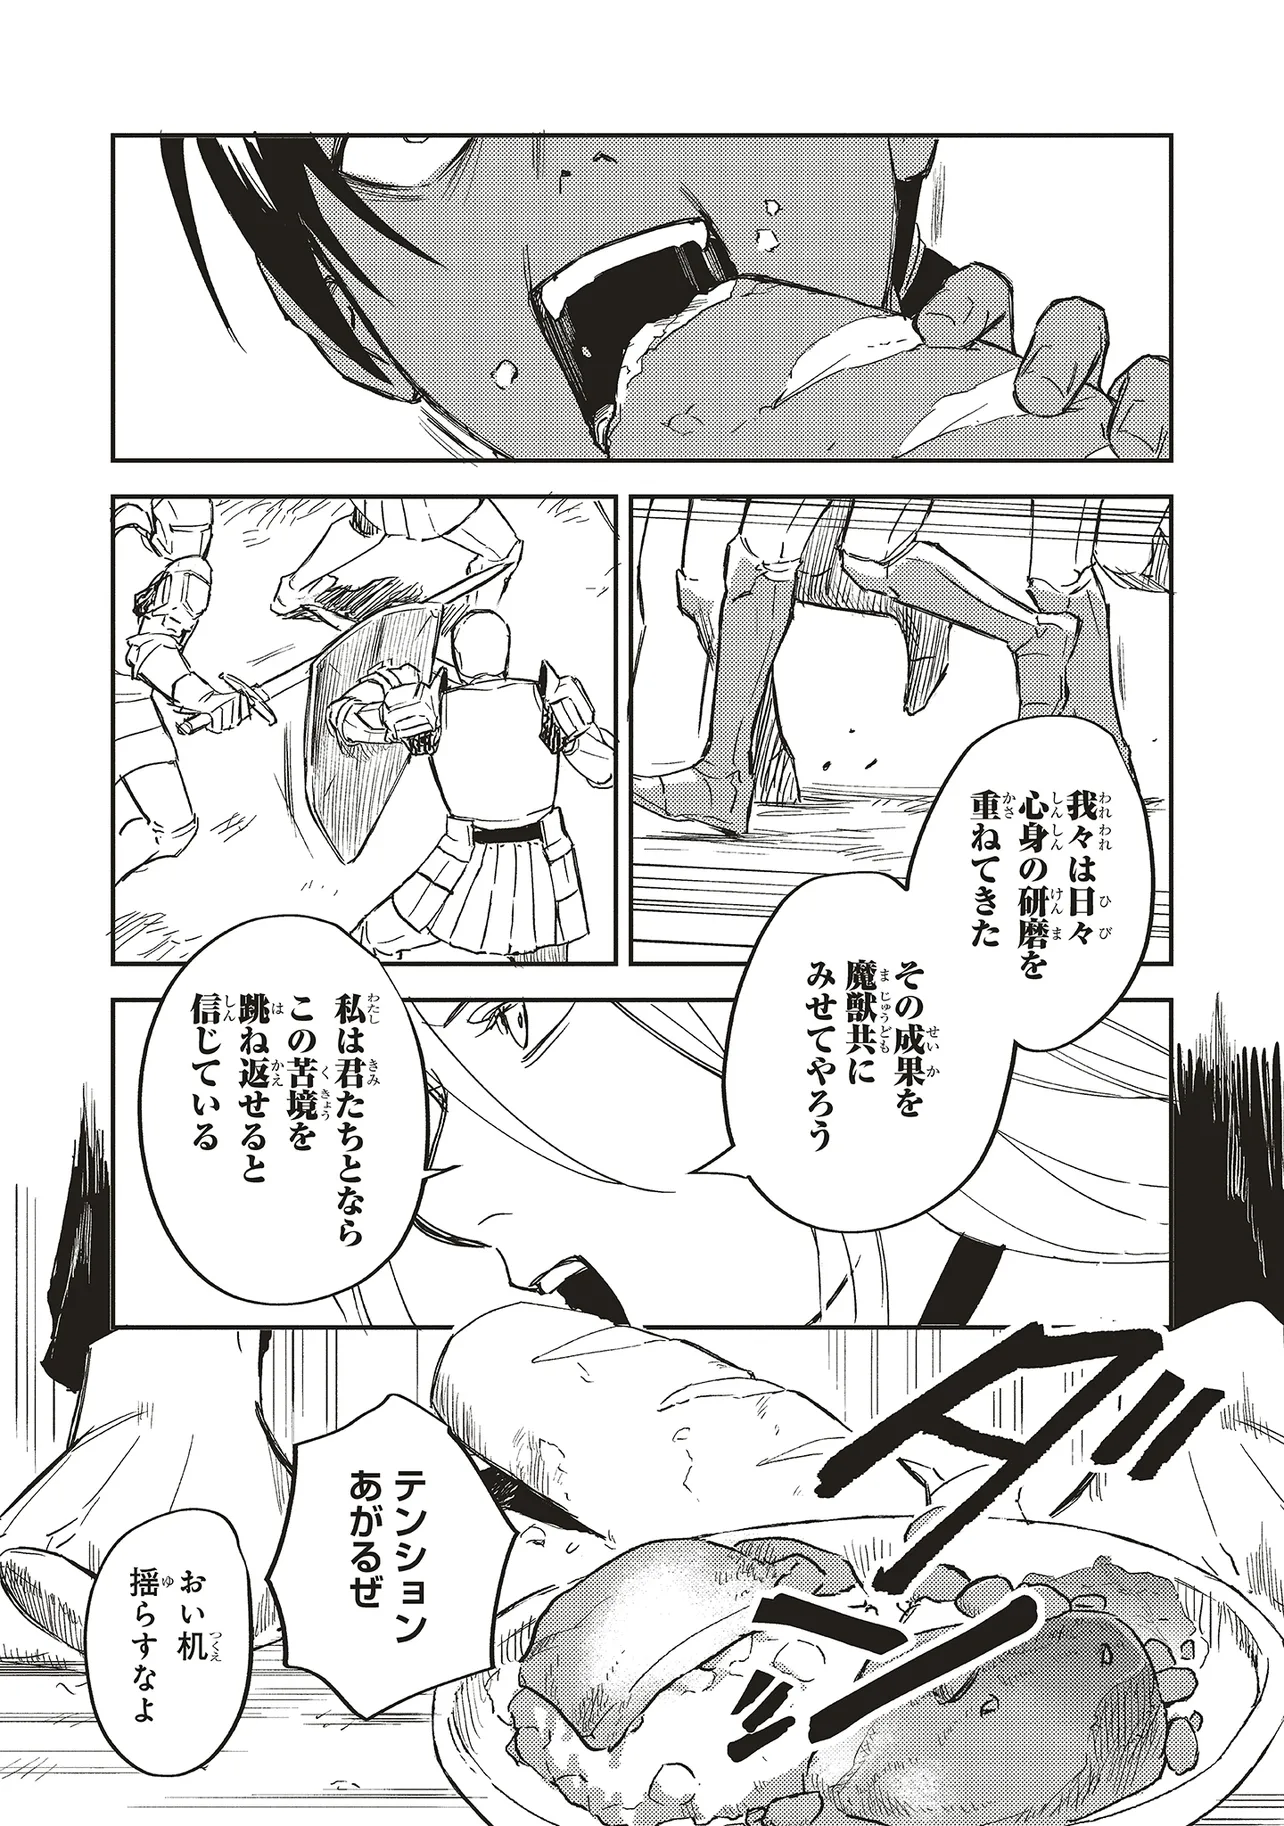 Eiketsu no Do M – Juuzoku Keiken Cheat tte Ari? - Chapter 8.1 - Page 3